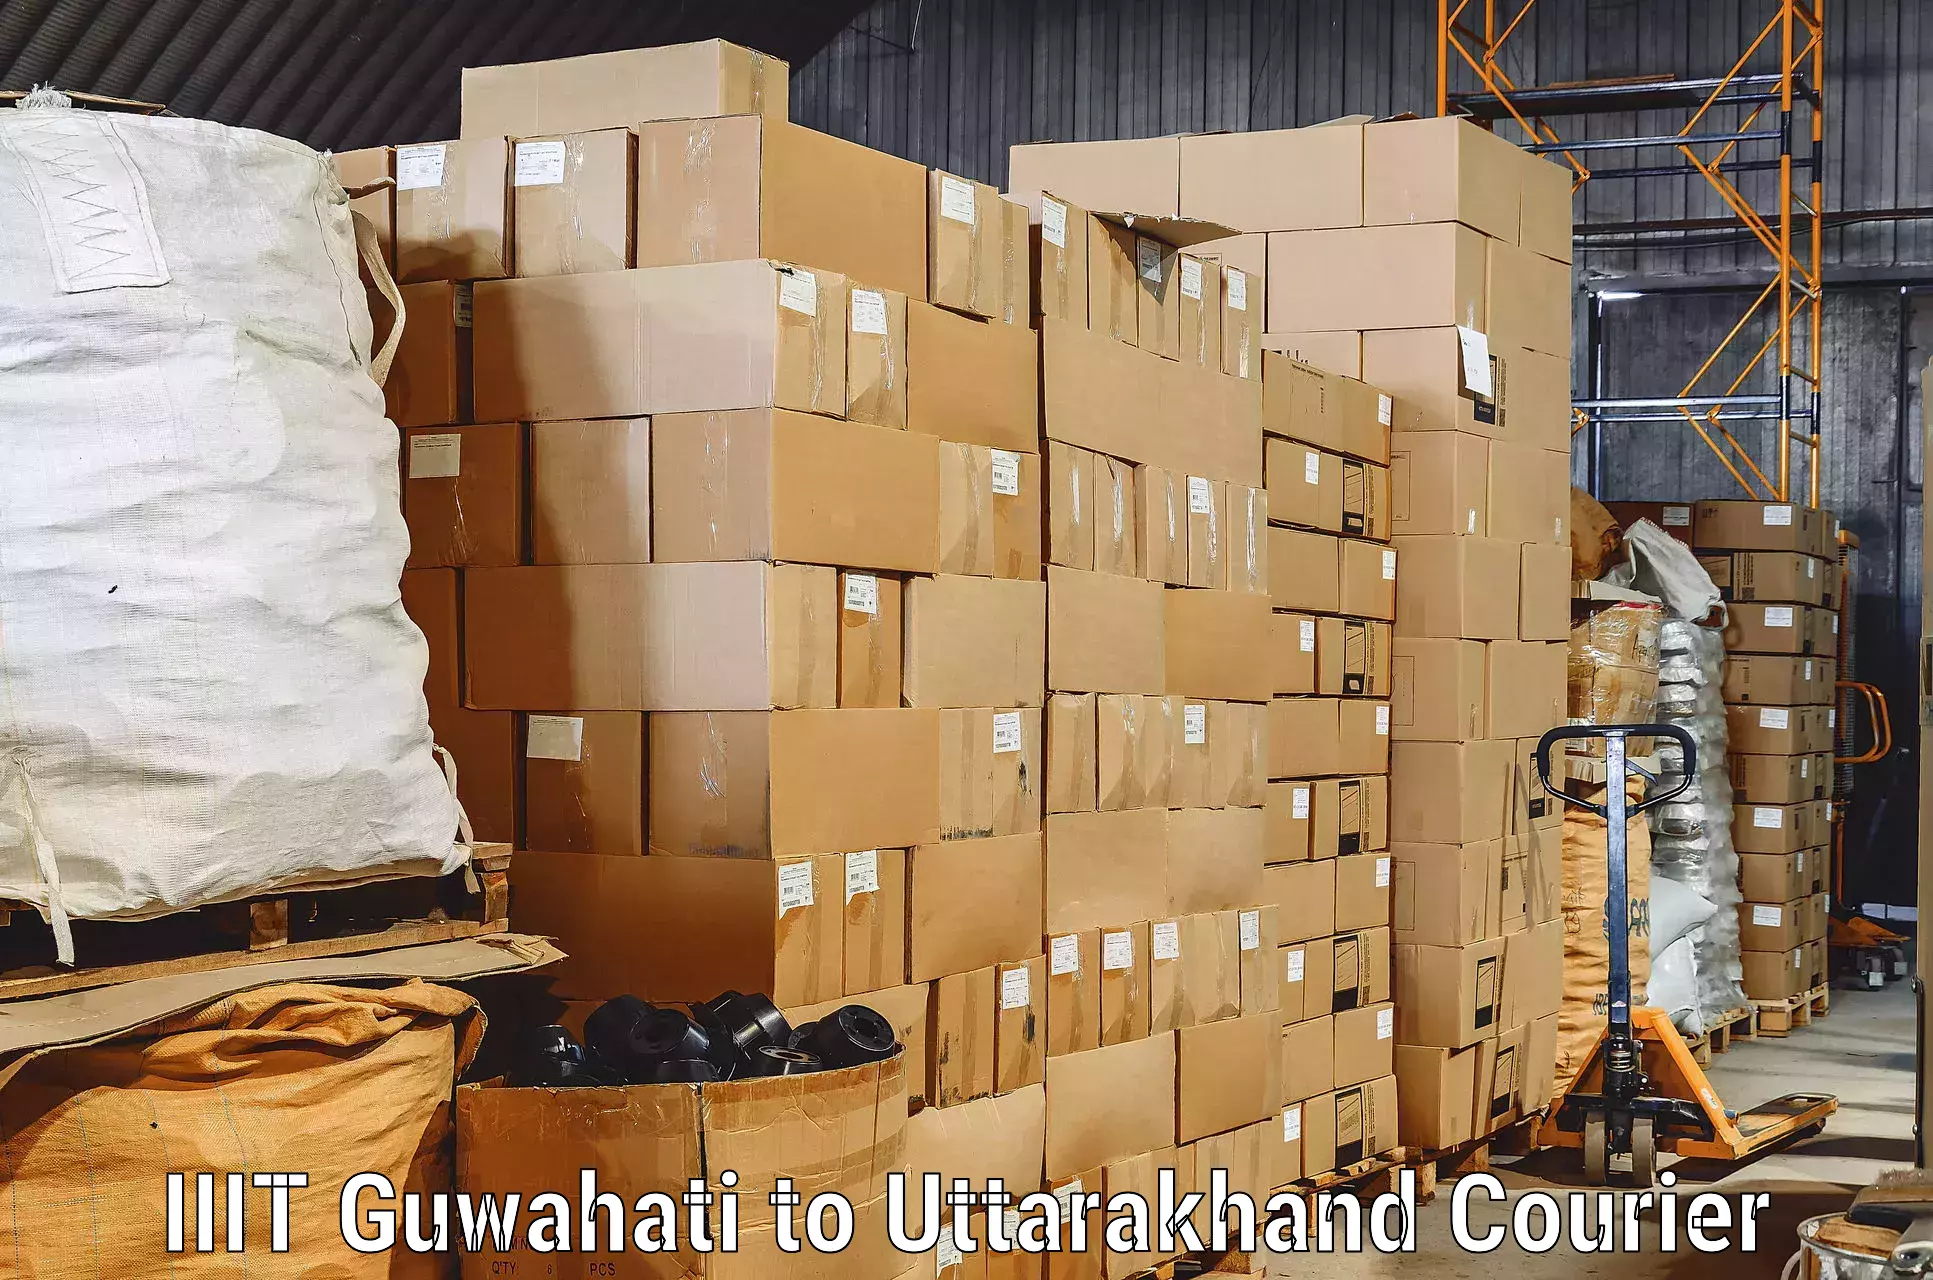 Quality household movers IIIT Guwahati to Ranikhet